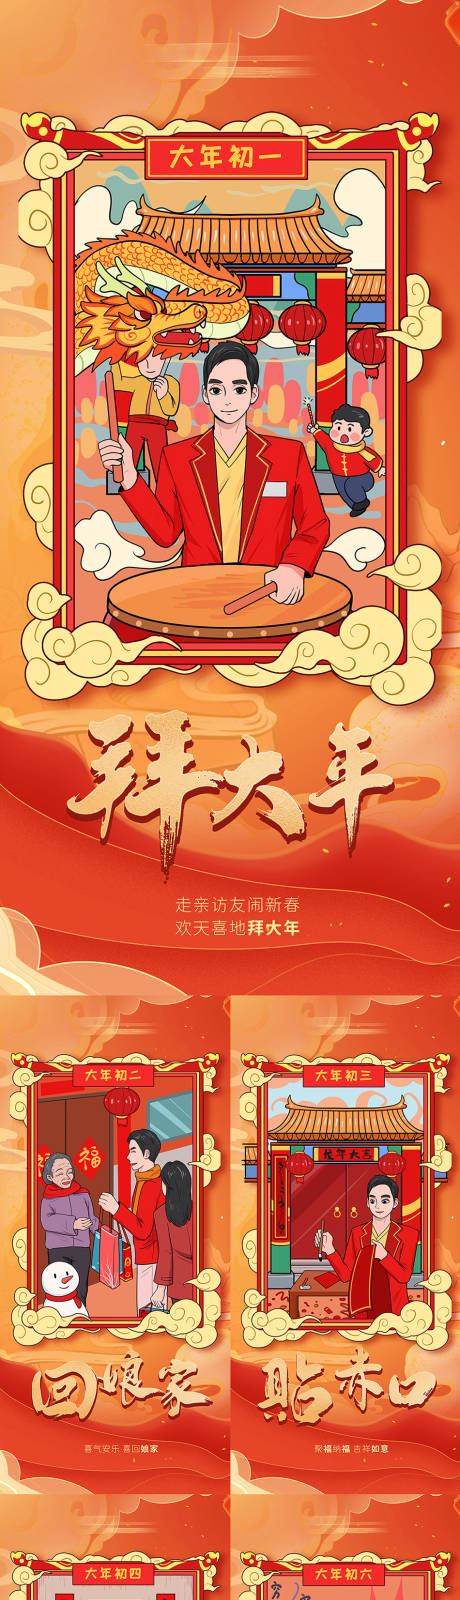 春节年俗系列手绘海报